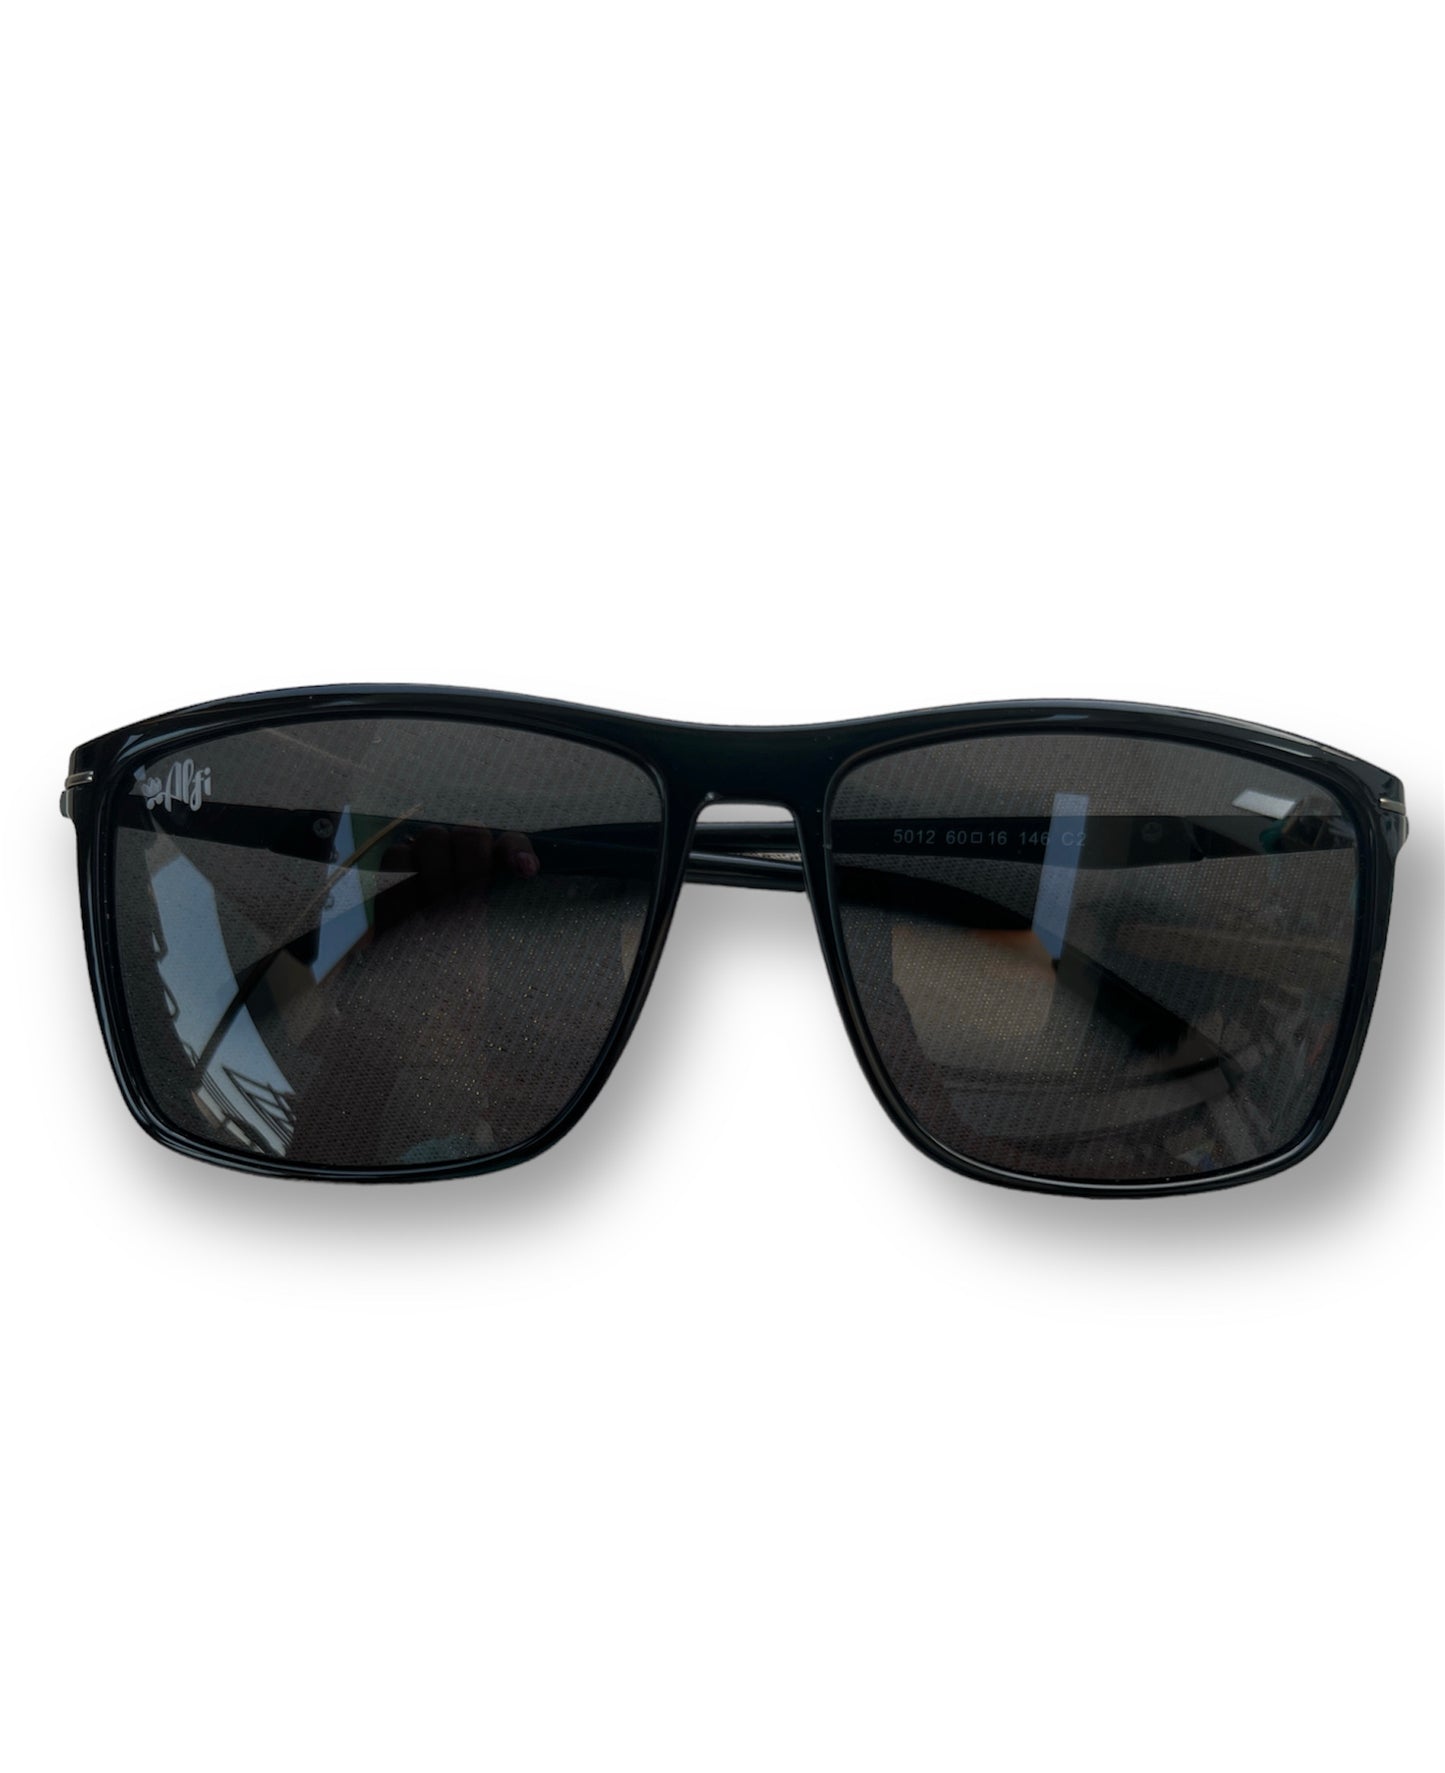 Polarized sunglasses – alfieyewear